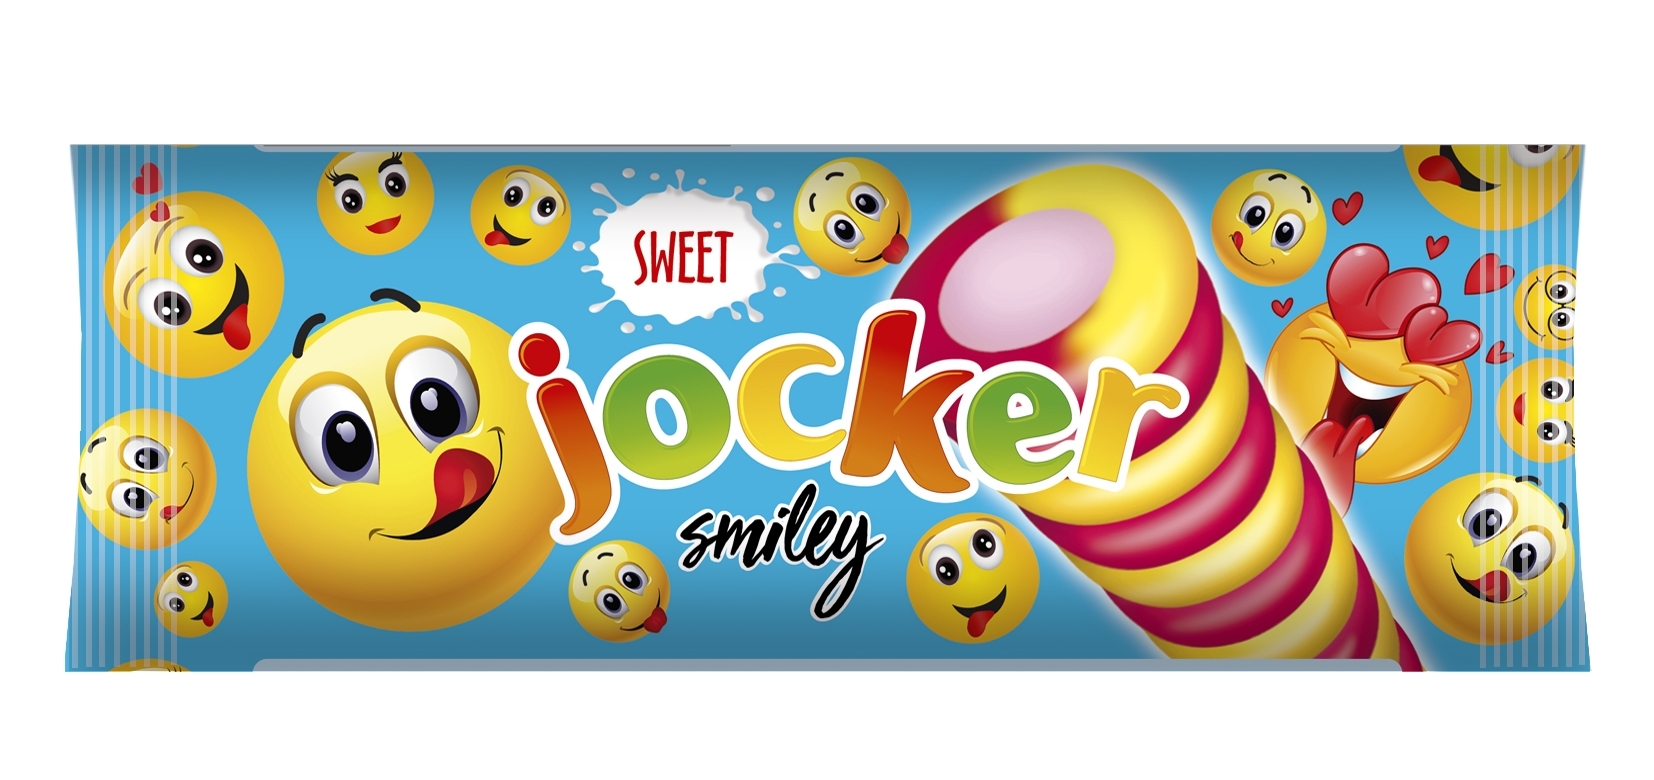 Jocker smiley sweet